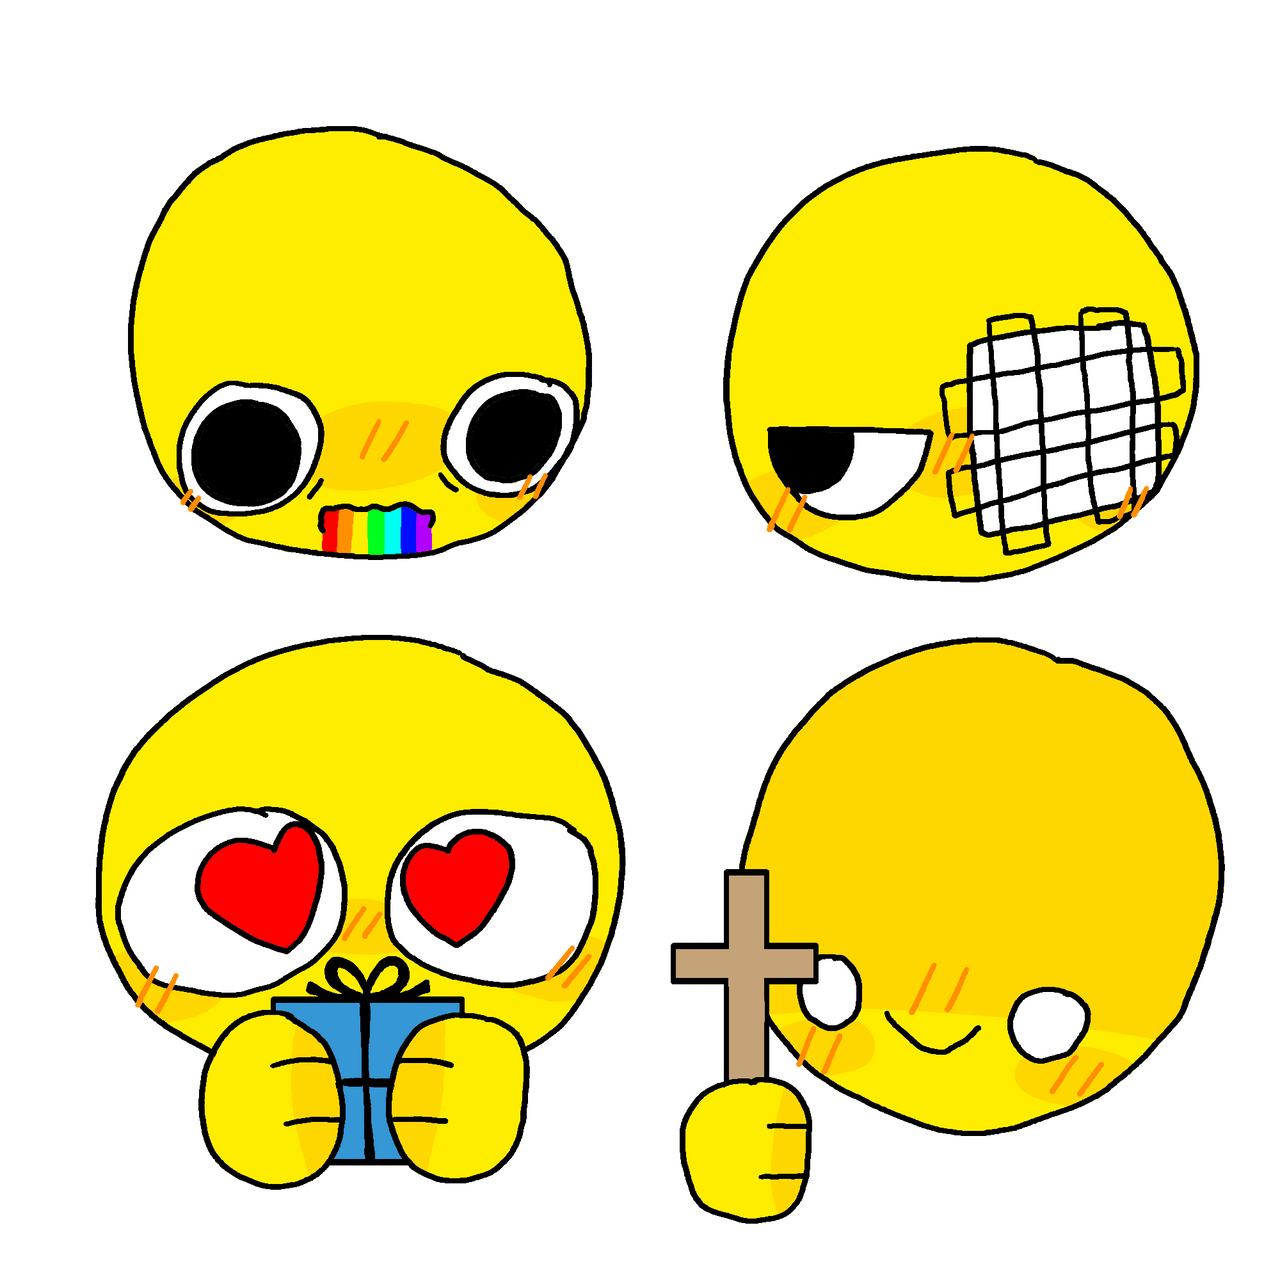 Mah cursed emoji by Coneys-hell-world on DeviantArt